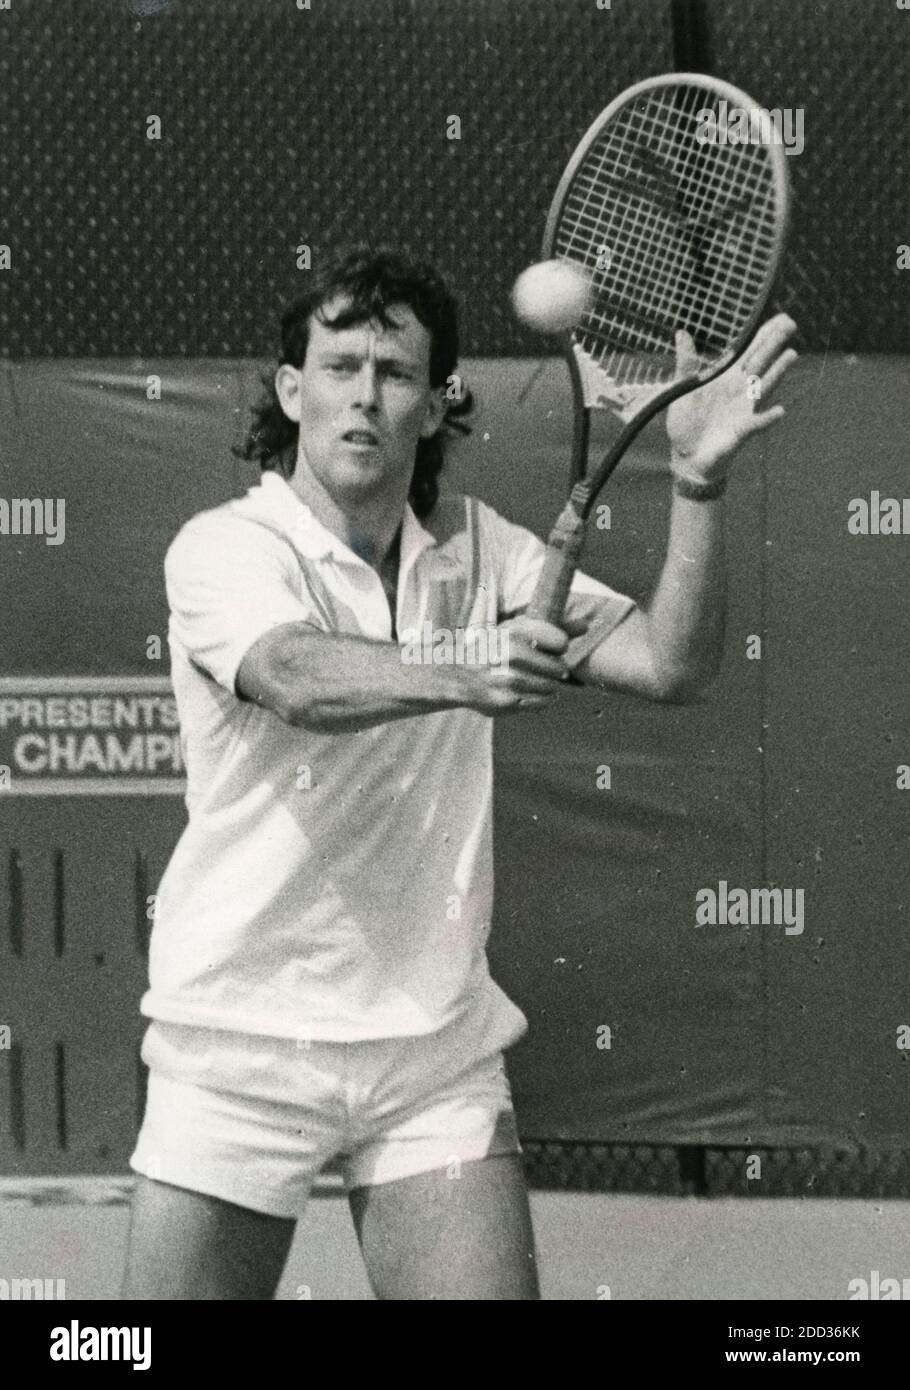 Joueur de tennis britannique Jeremy Bates, années 1980 Banque D'Images